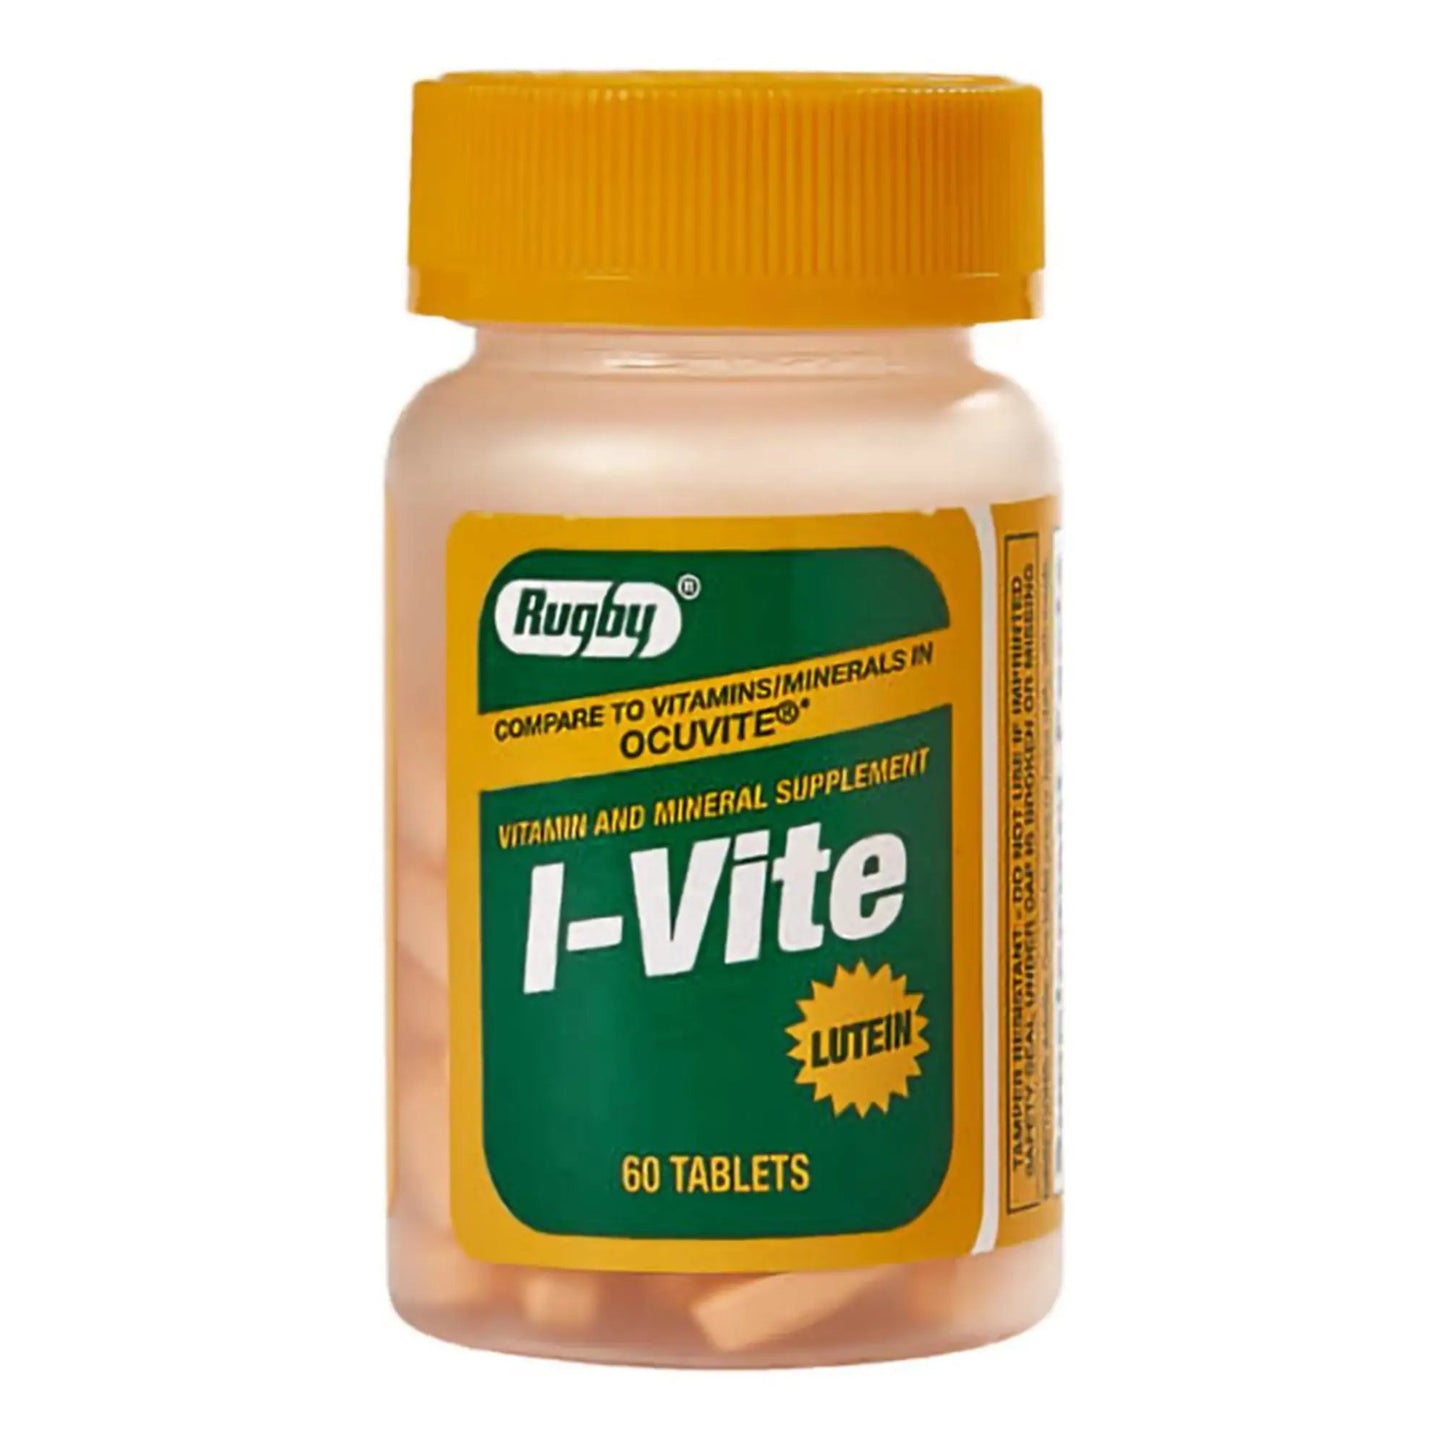 I-Vite Multivitamin Supplement, 60 Tablets per Bottle